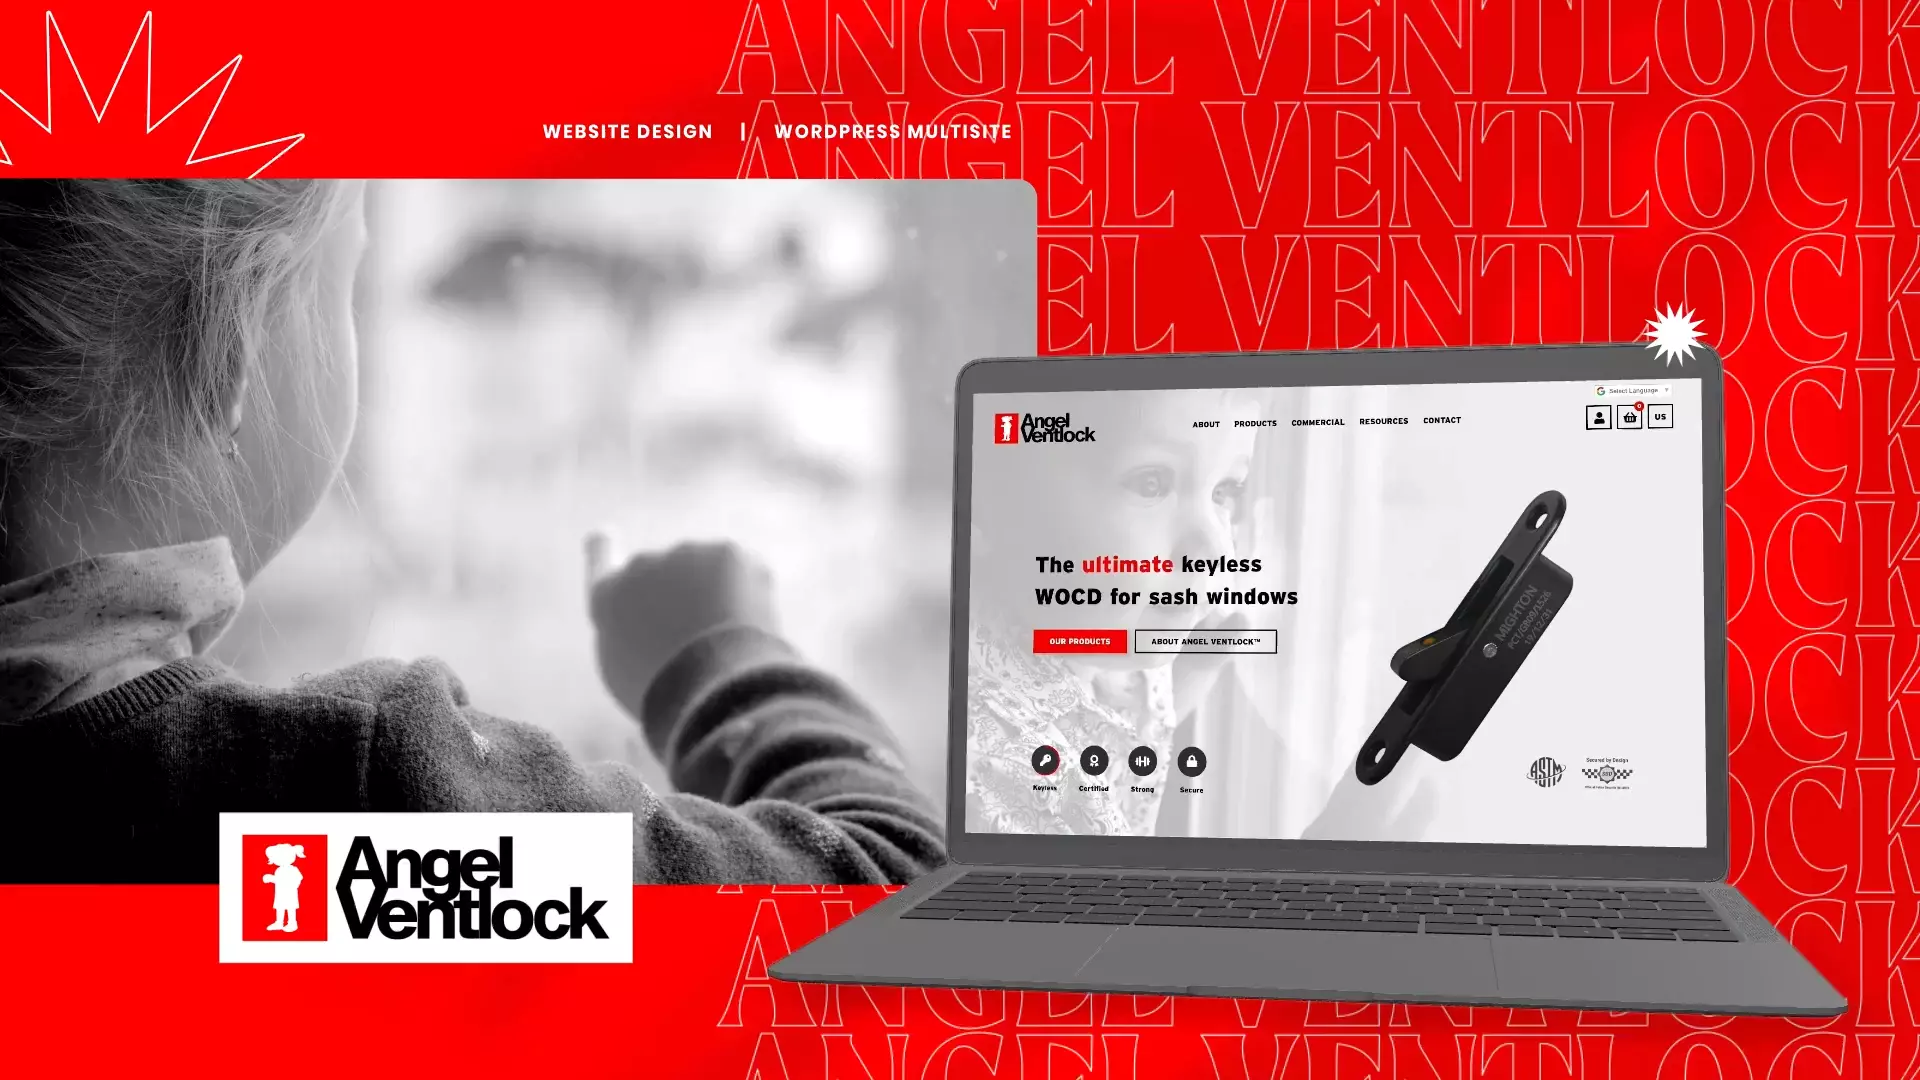 Angel Ventlock website featured image wide